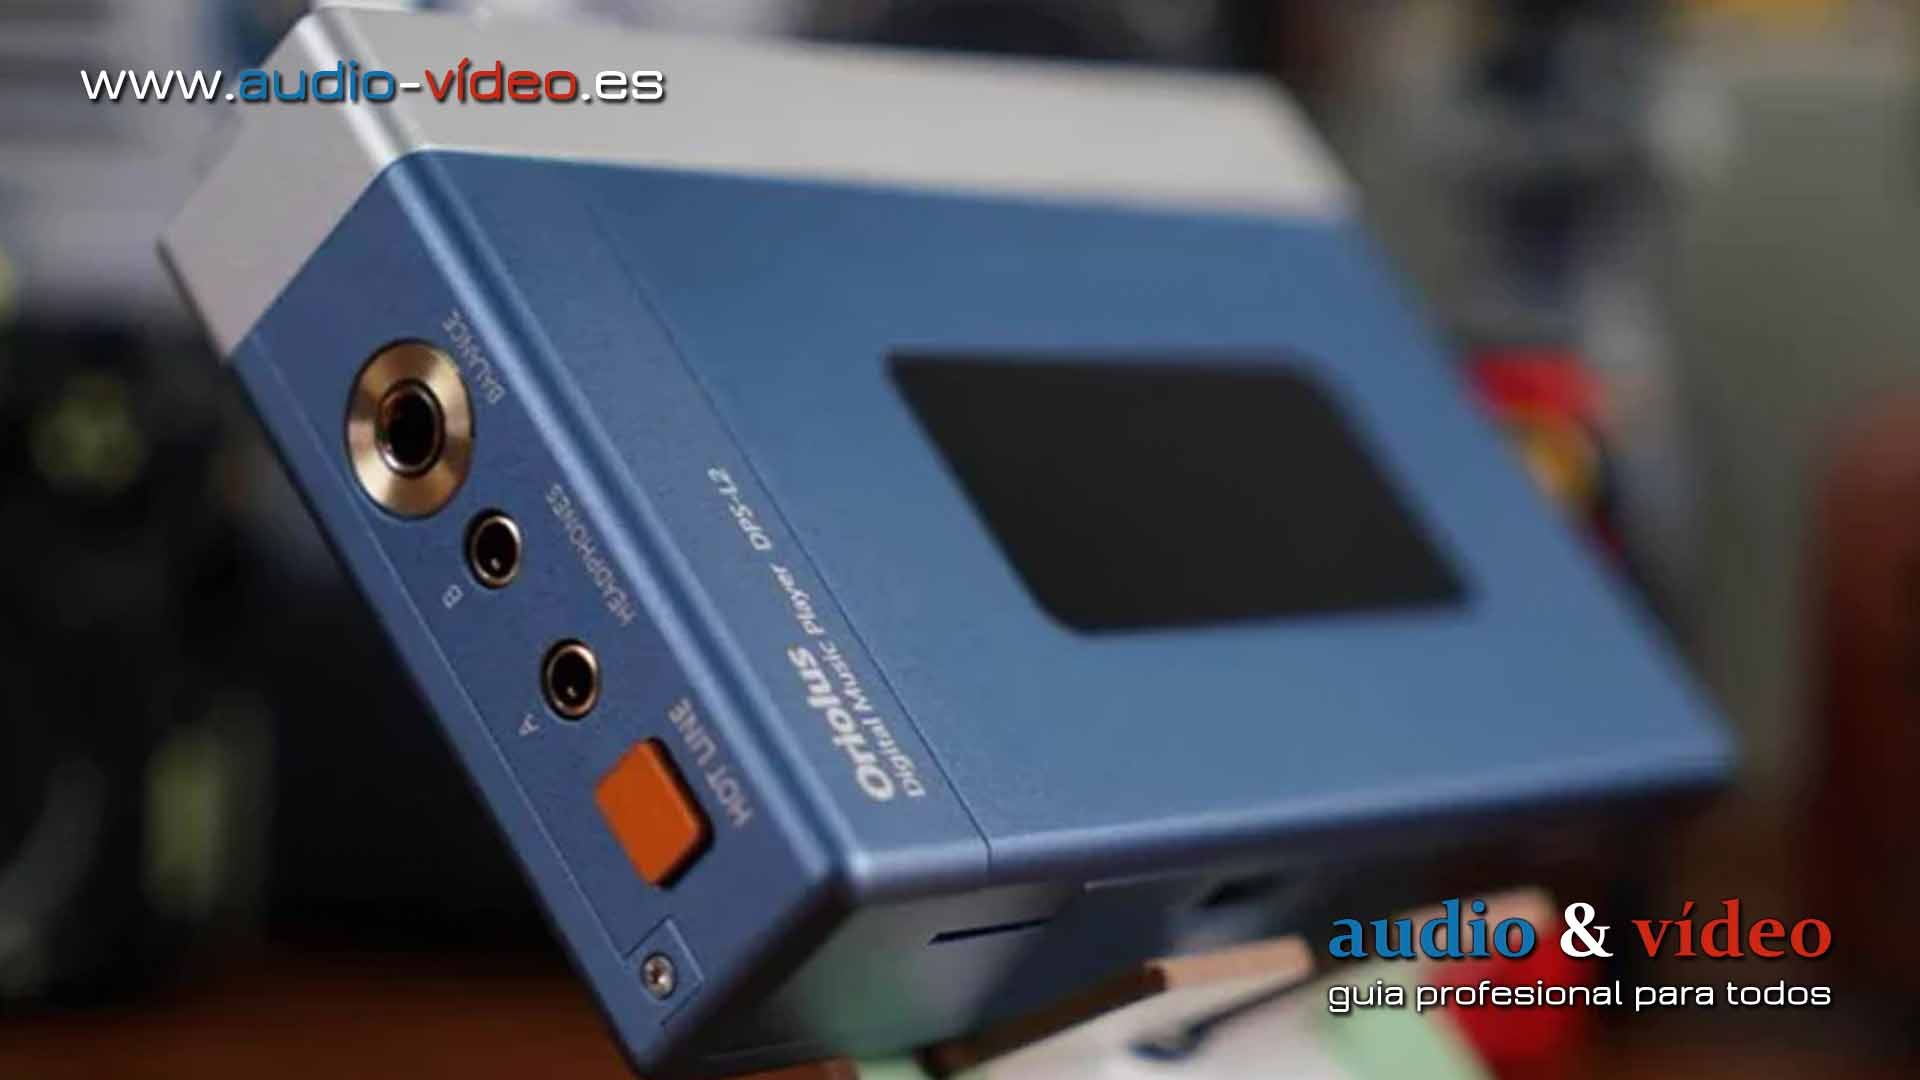 Oriolus – DPS-LS2 / ES9038 Pro – reproductor portátil en esytilo Walkman